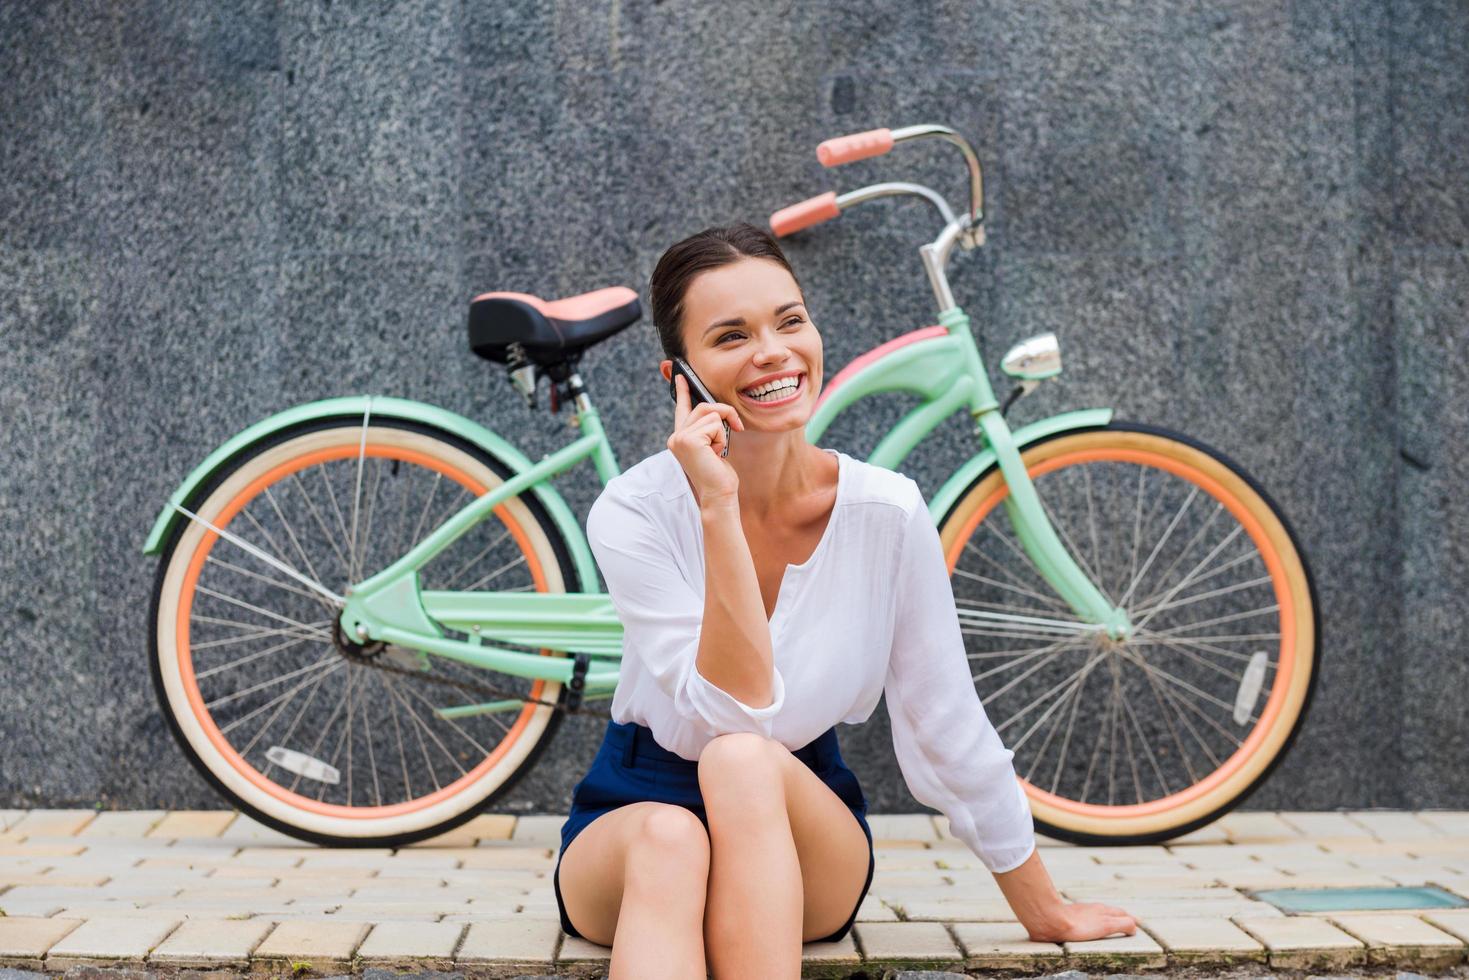 gutes Gespräch mit Freund. Attraktive junge lächelnde Frau, die mit dem Handy spricht, während sie am Straßenrand in der Nähe ihres Oldtimer-Fahrrads sitzt foto